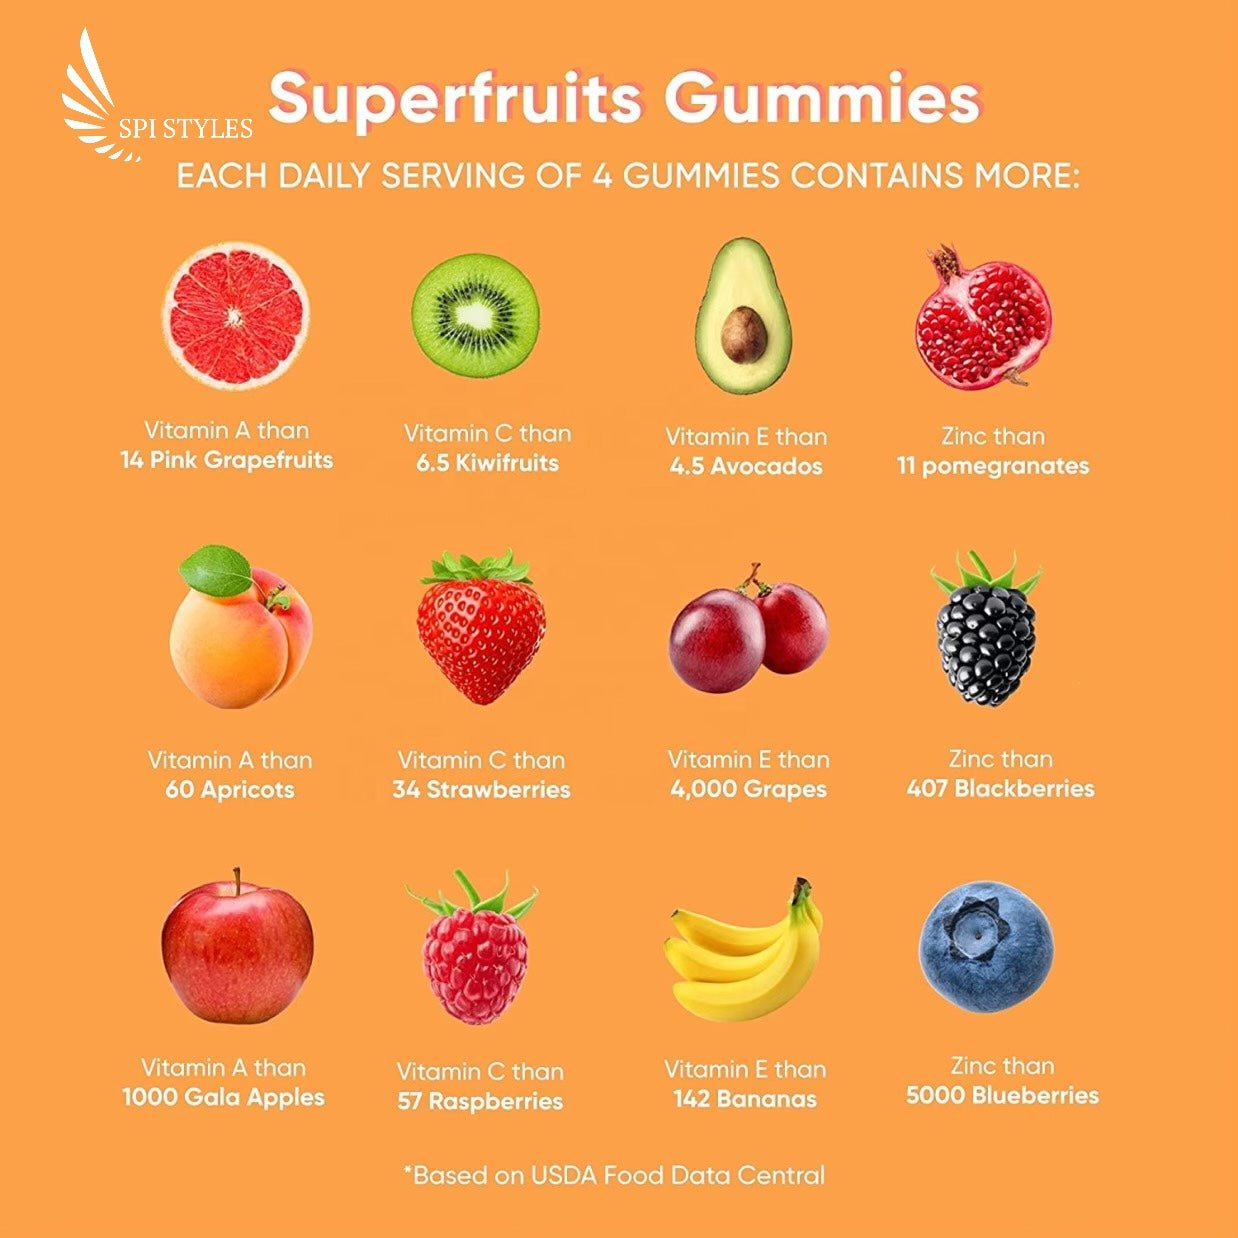 SPI Styles Superfruit Gummies - SPI Styles